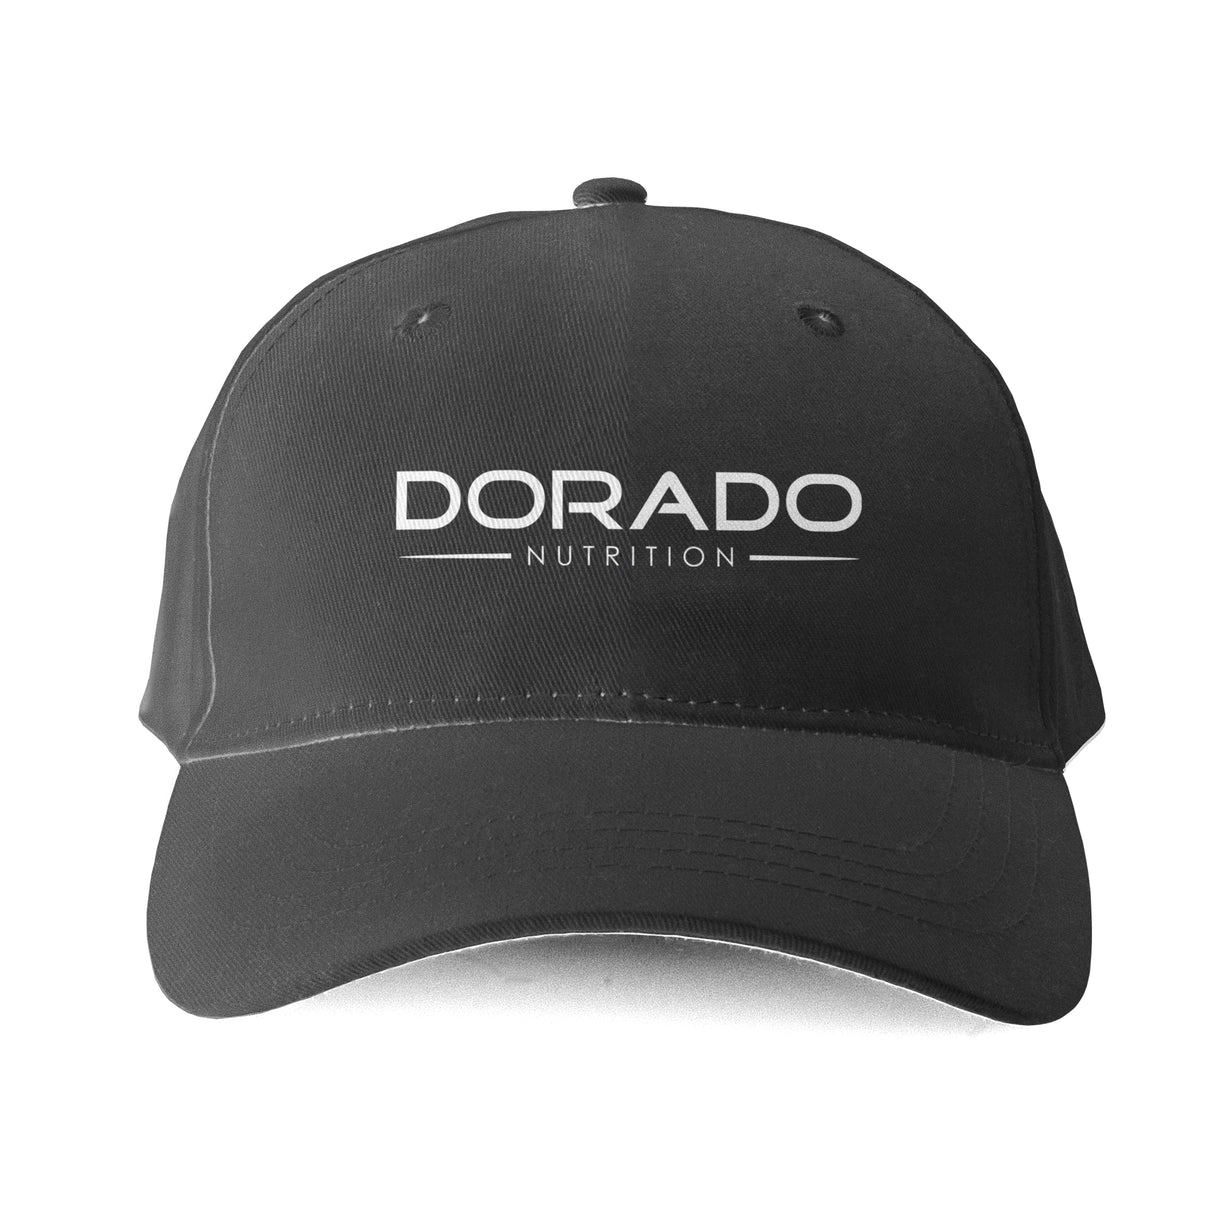 Dorado Nutrition Hat - Black